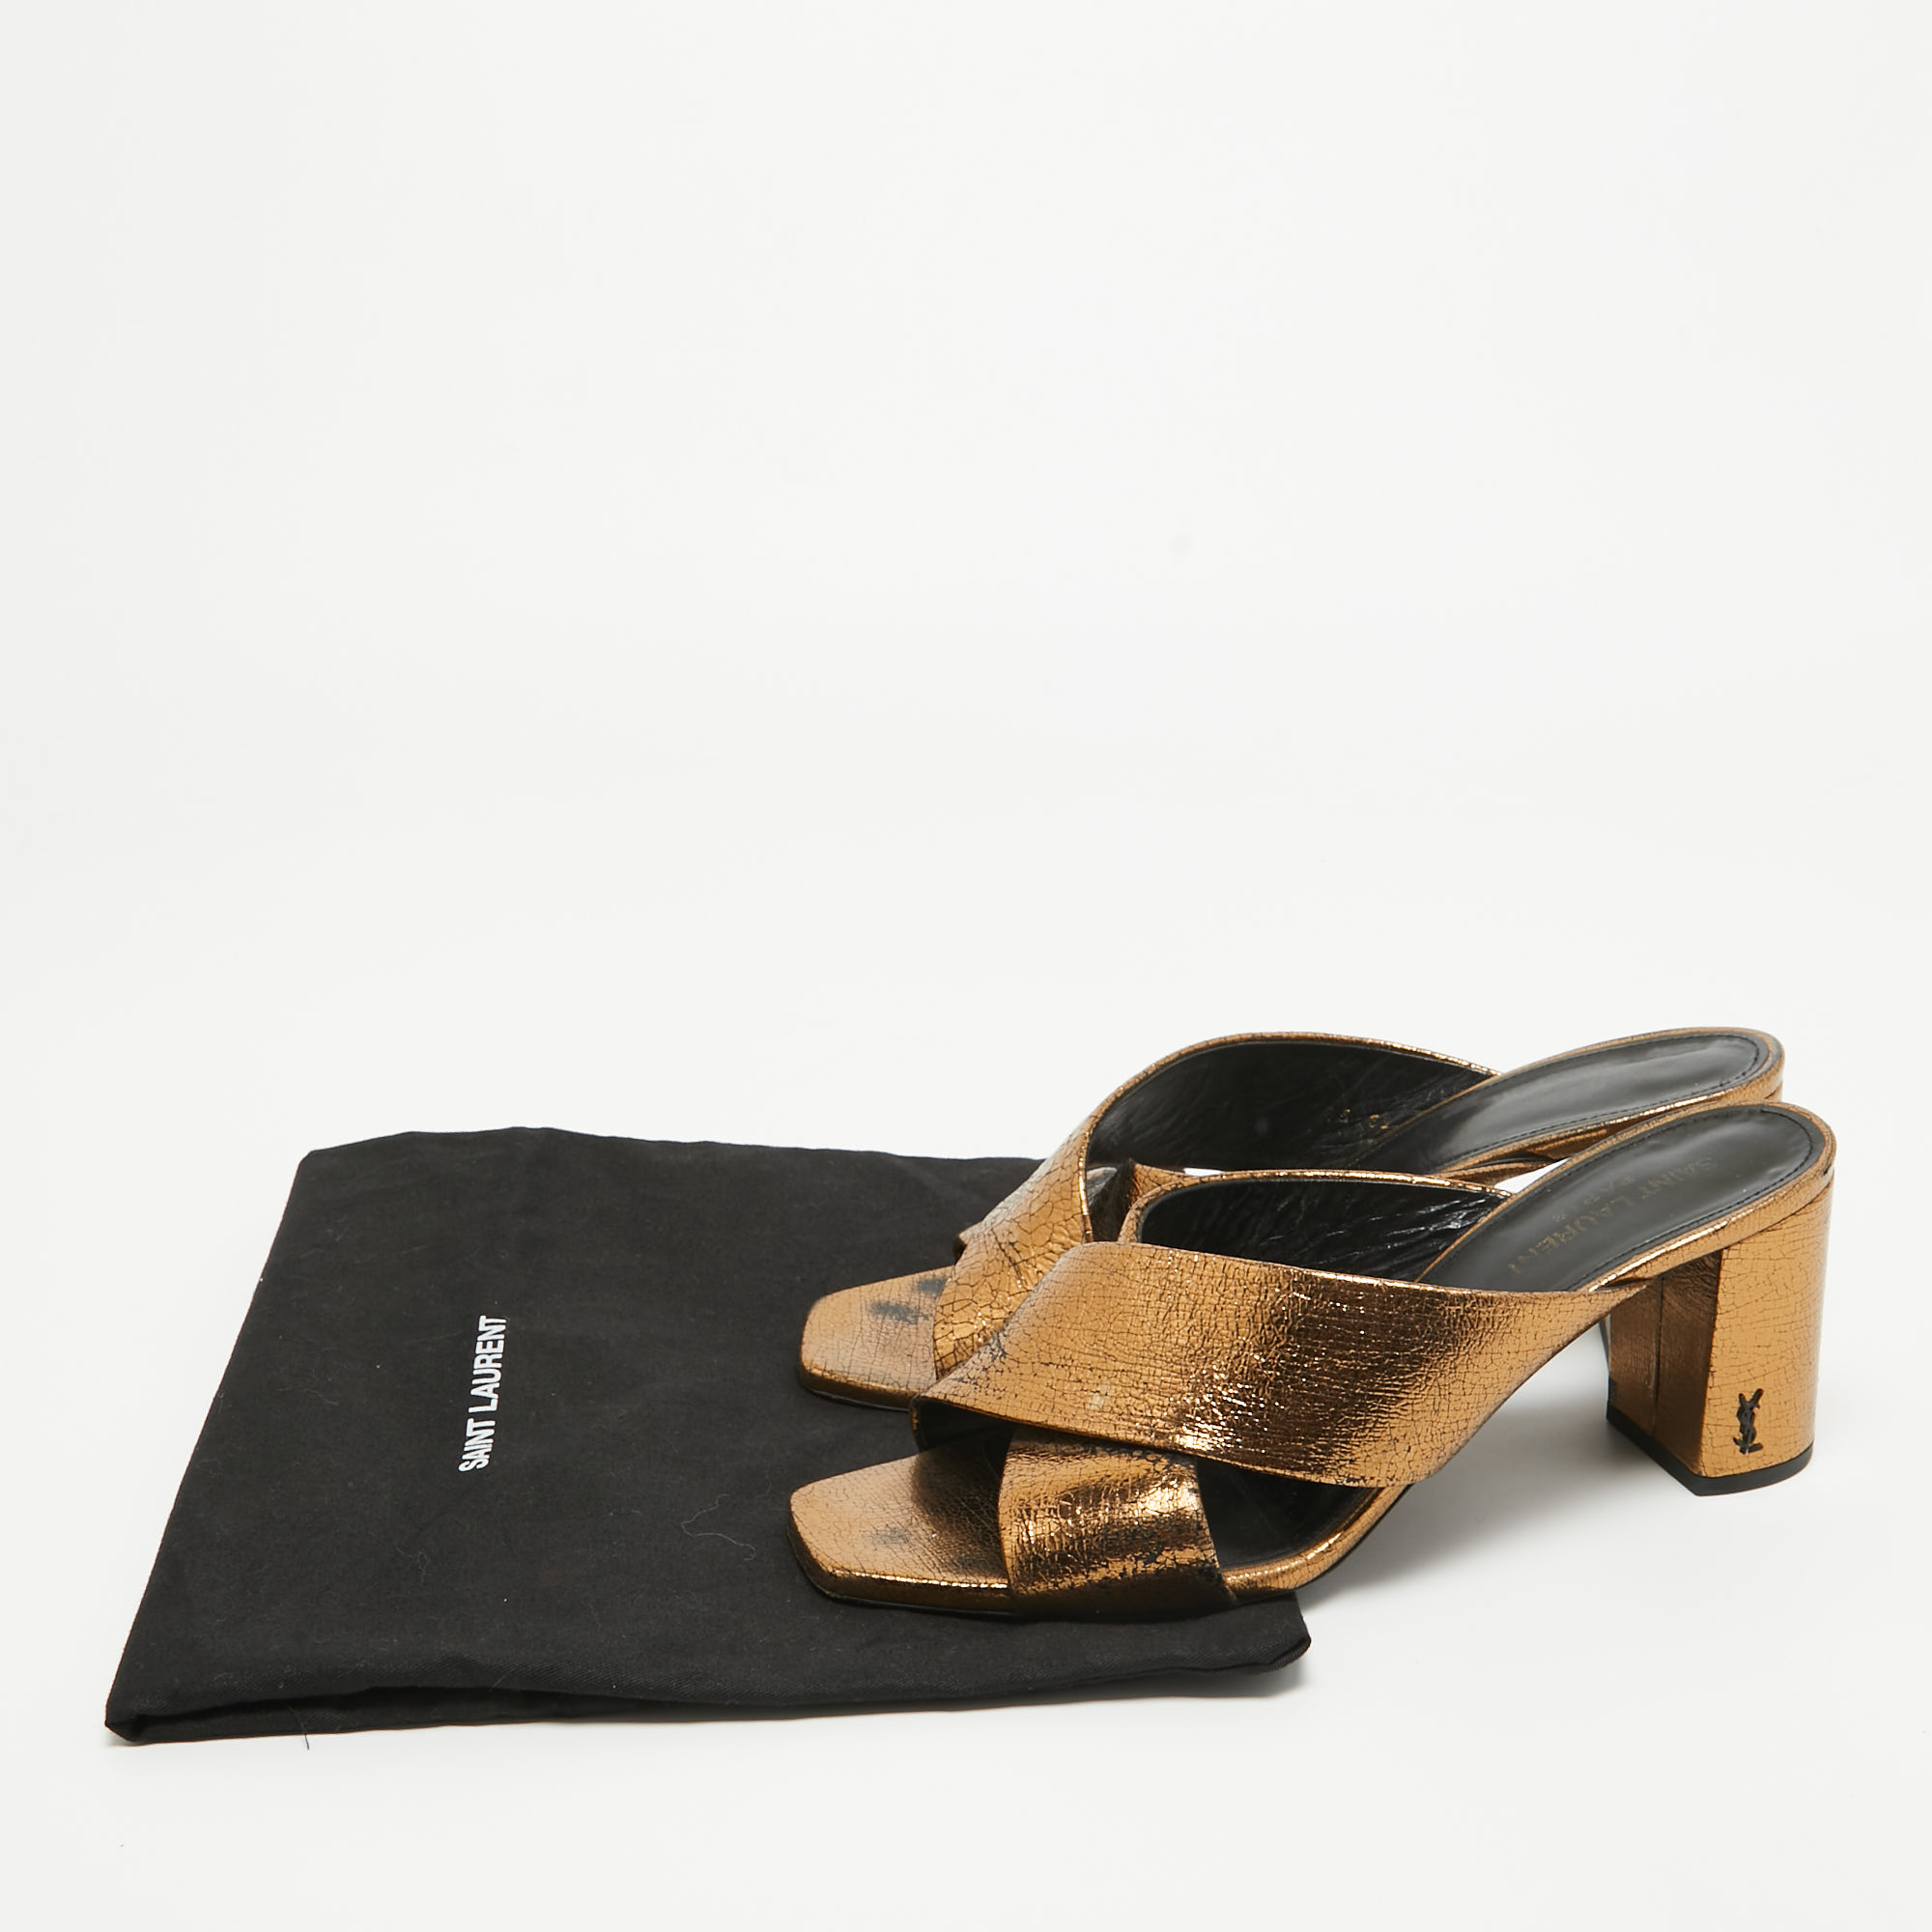 Saint Laurent Metallic Leather LouLou Slide Sandals Size 39